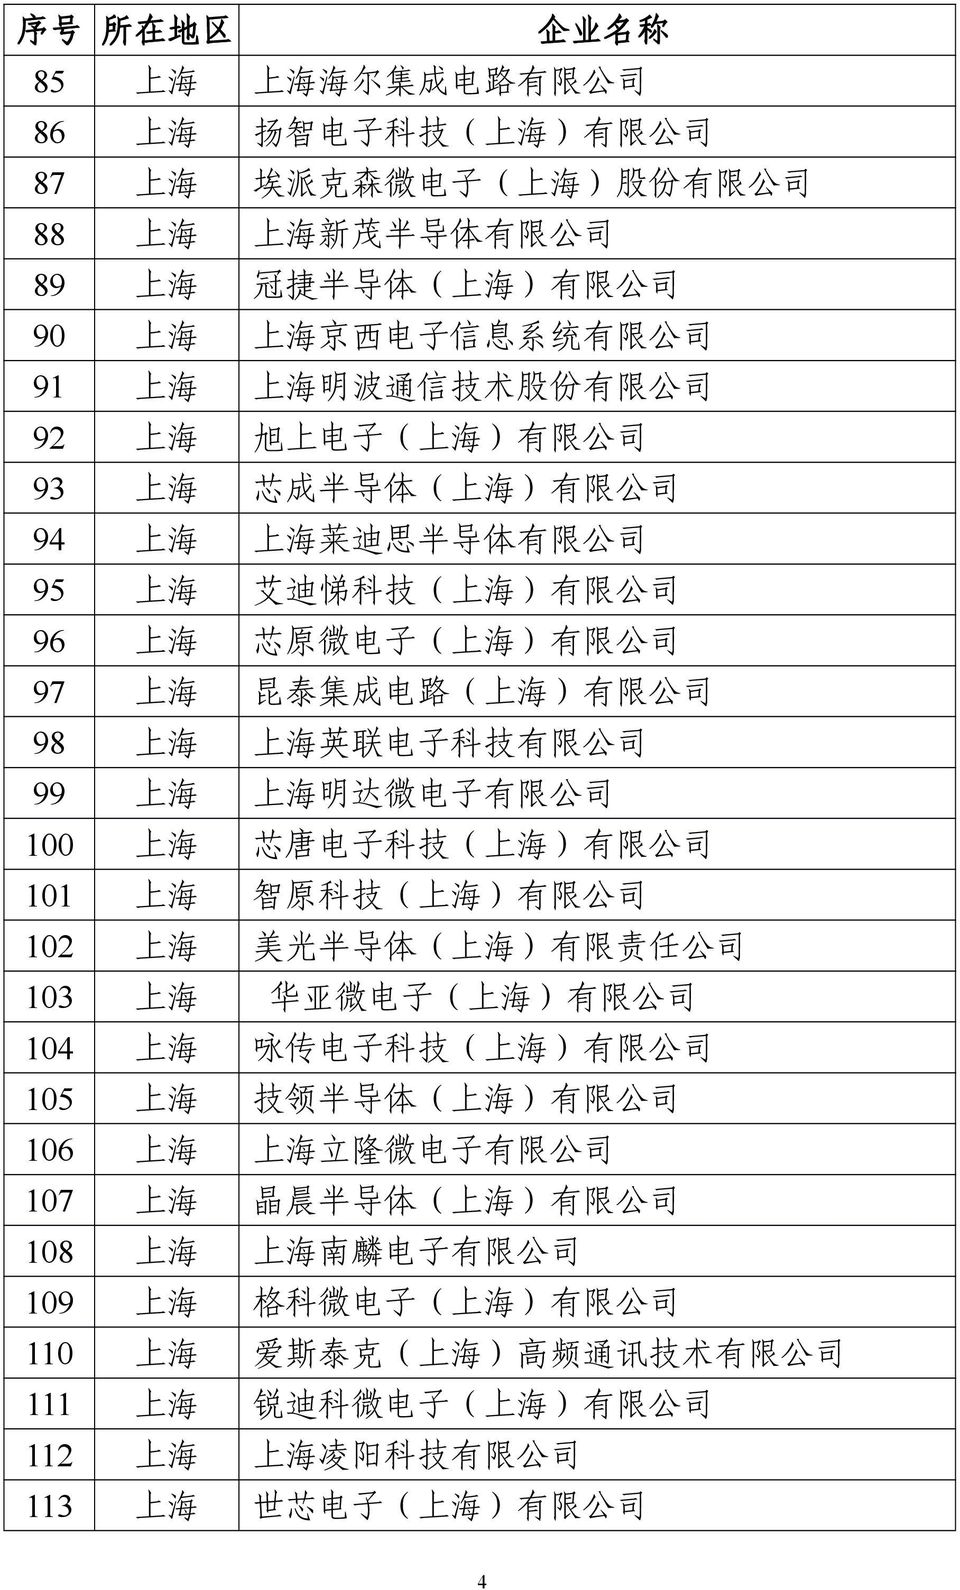 97 上 海 昆 泰 集 成 电 路 ( 上 海 ) 有 限 公 司 98 上 海 上 海 英 联 电 子 科 技 有 限 公 司 99 上 海 上 海 明 达 微 电 子 有 限 公 司 100 上 海 芯 唐 电 子 科 技 ( 上 海 ) 有 限 公 司 101 上 海 智 原 科 技 ( 上 海 ) 有 限 公 司 102 上 海 美 光 半 导 体 ( 上 海 ) 有 限 责 任 公